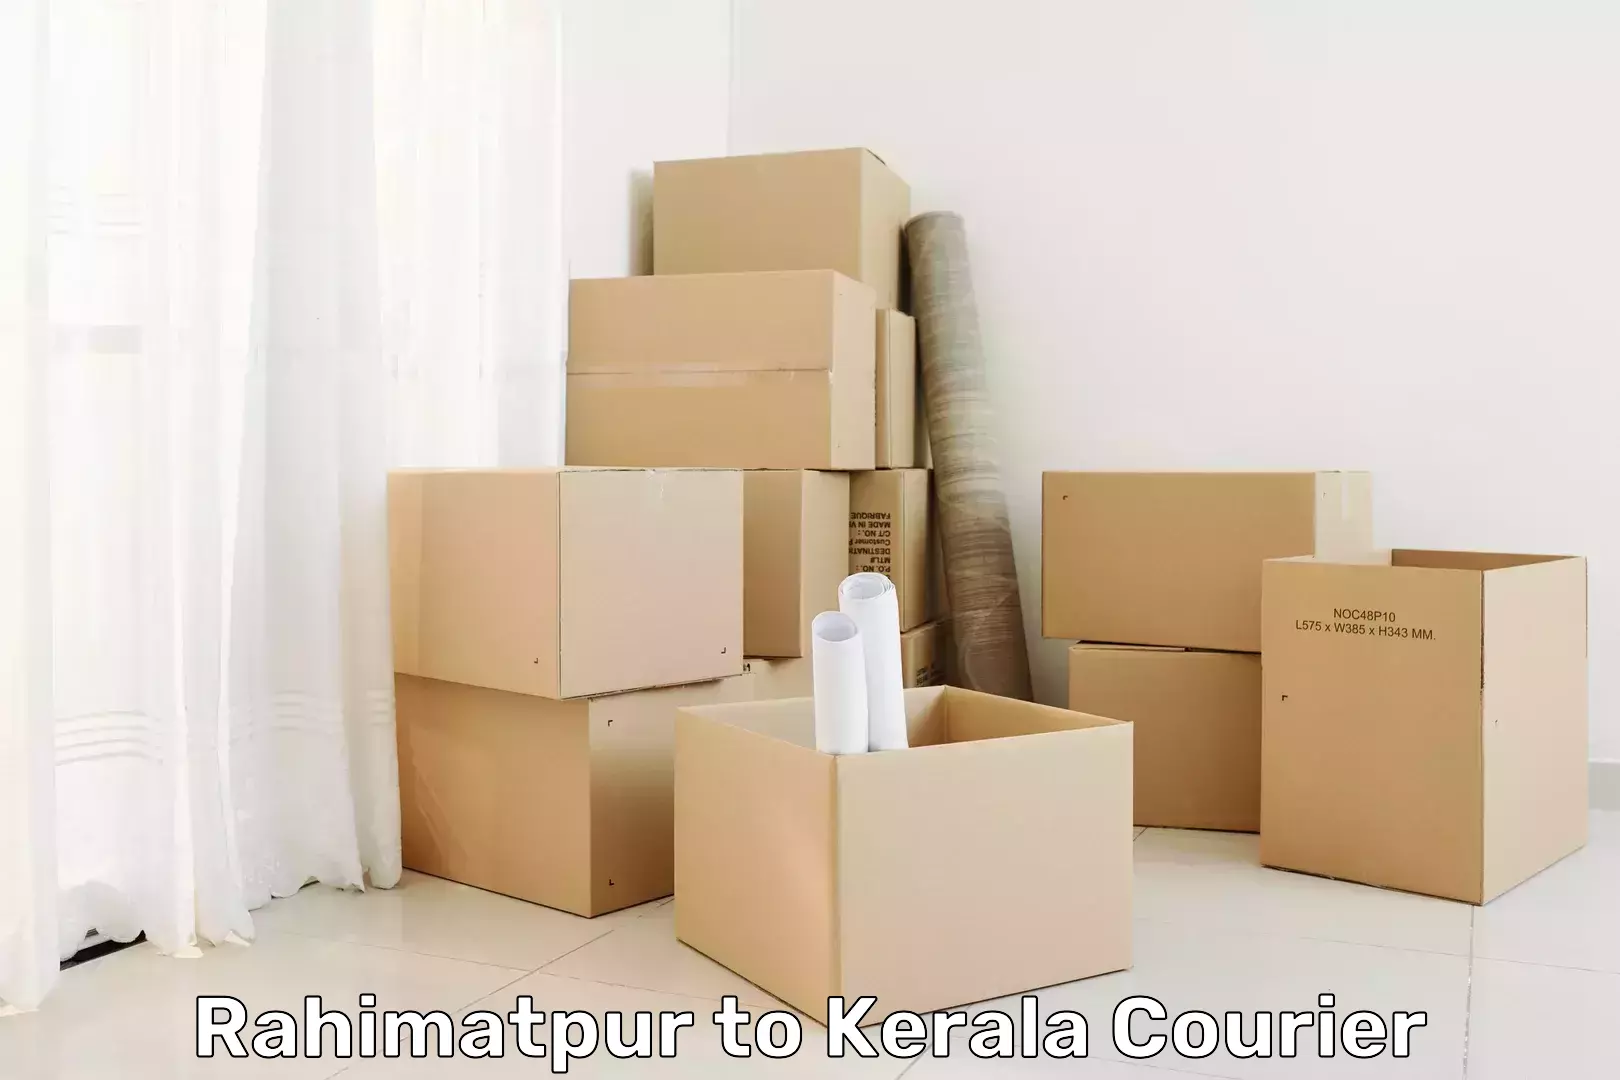 Optimized courier strategies in Rahimatpur to Kerala